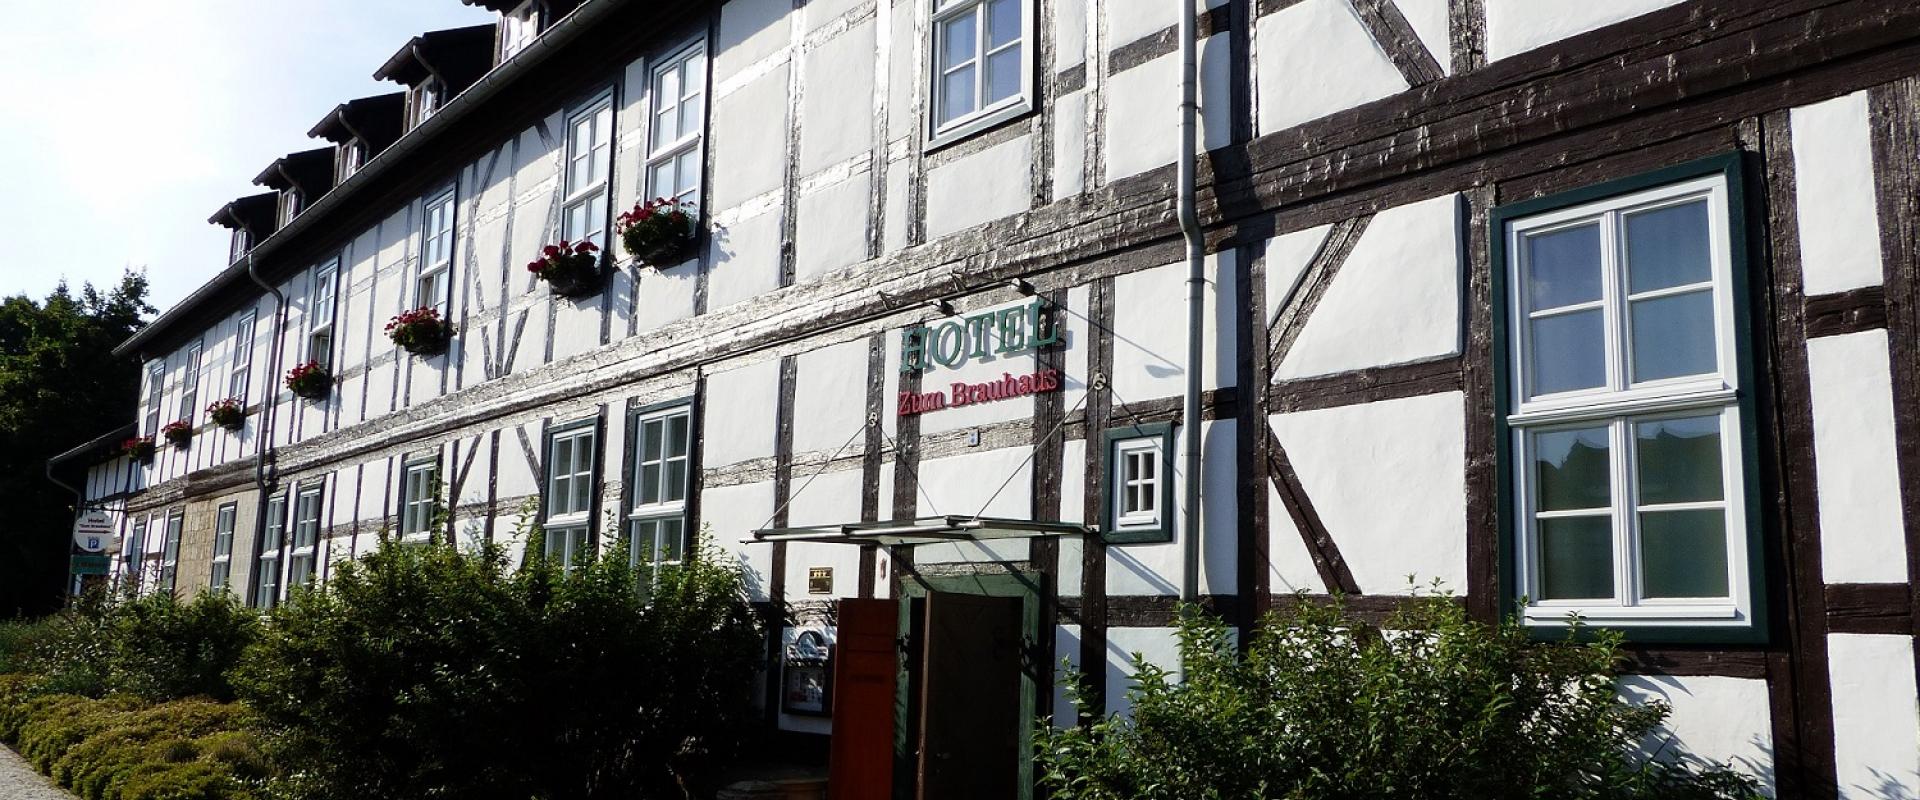 11607 Motorrad Hotel Zum Brauhaus im Schwarzwald.jpg